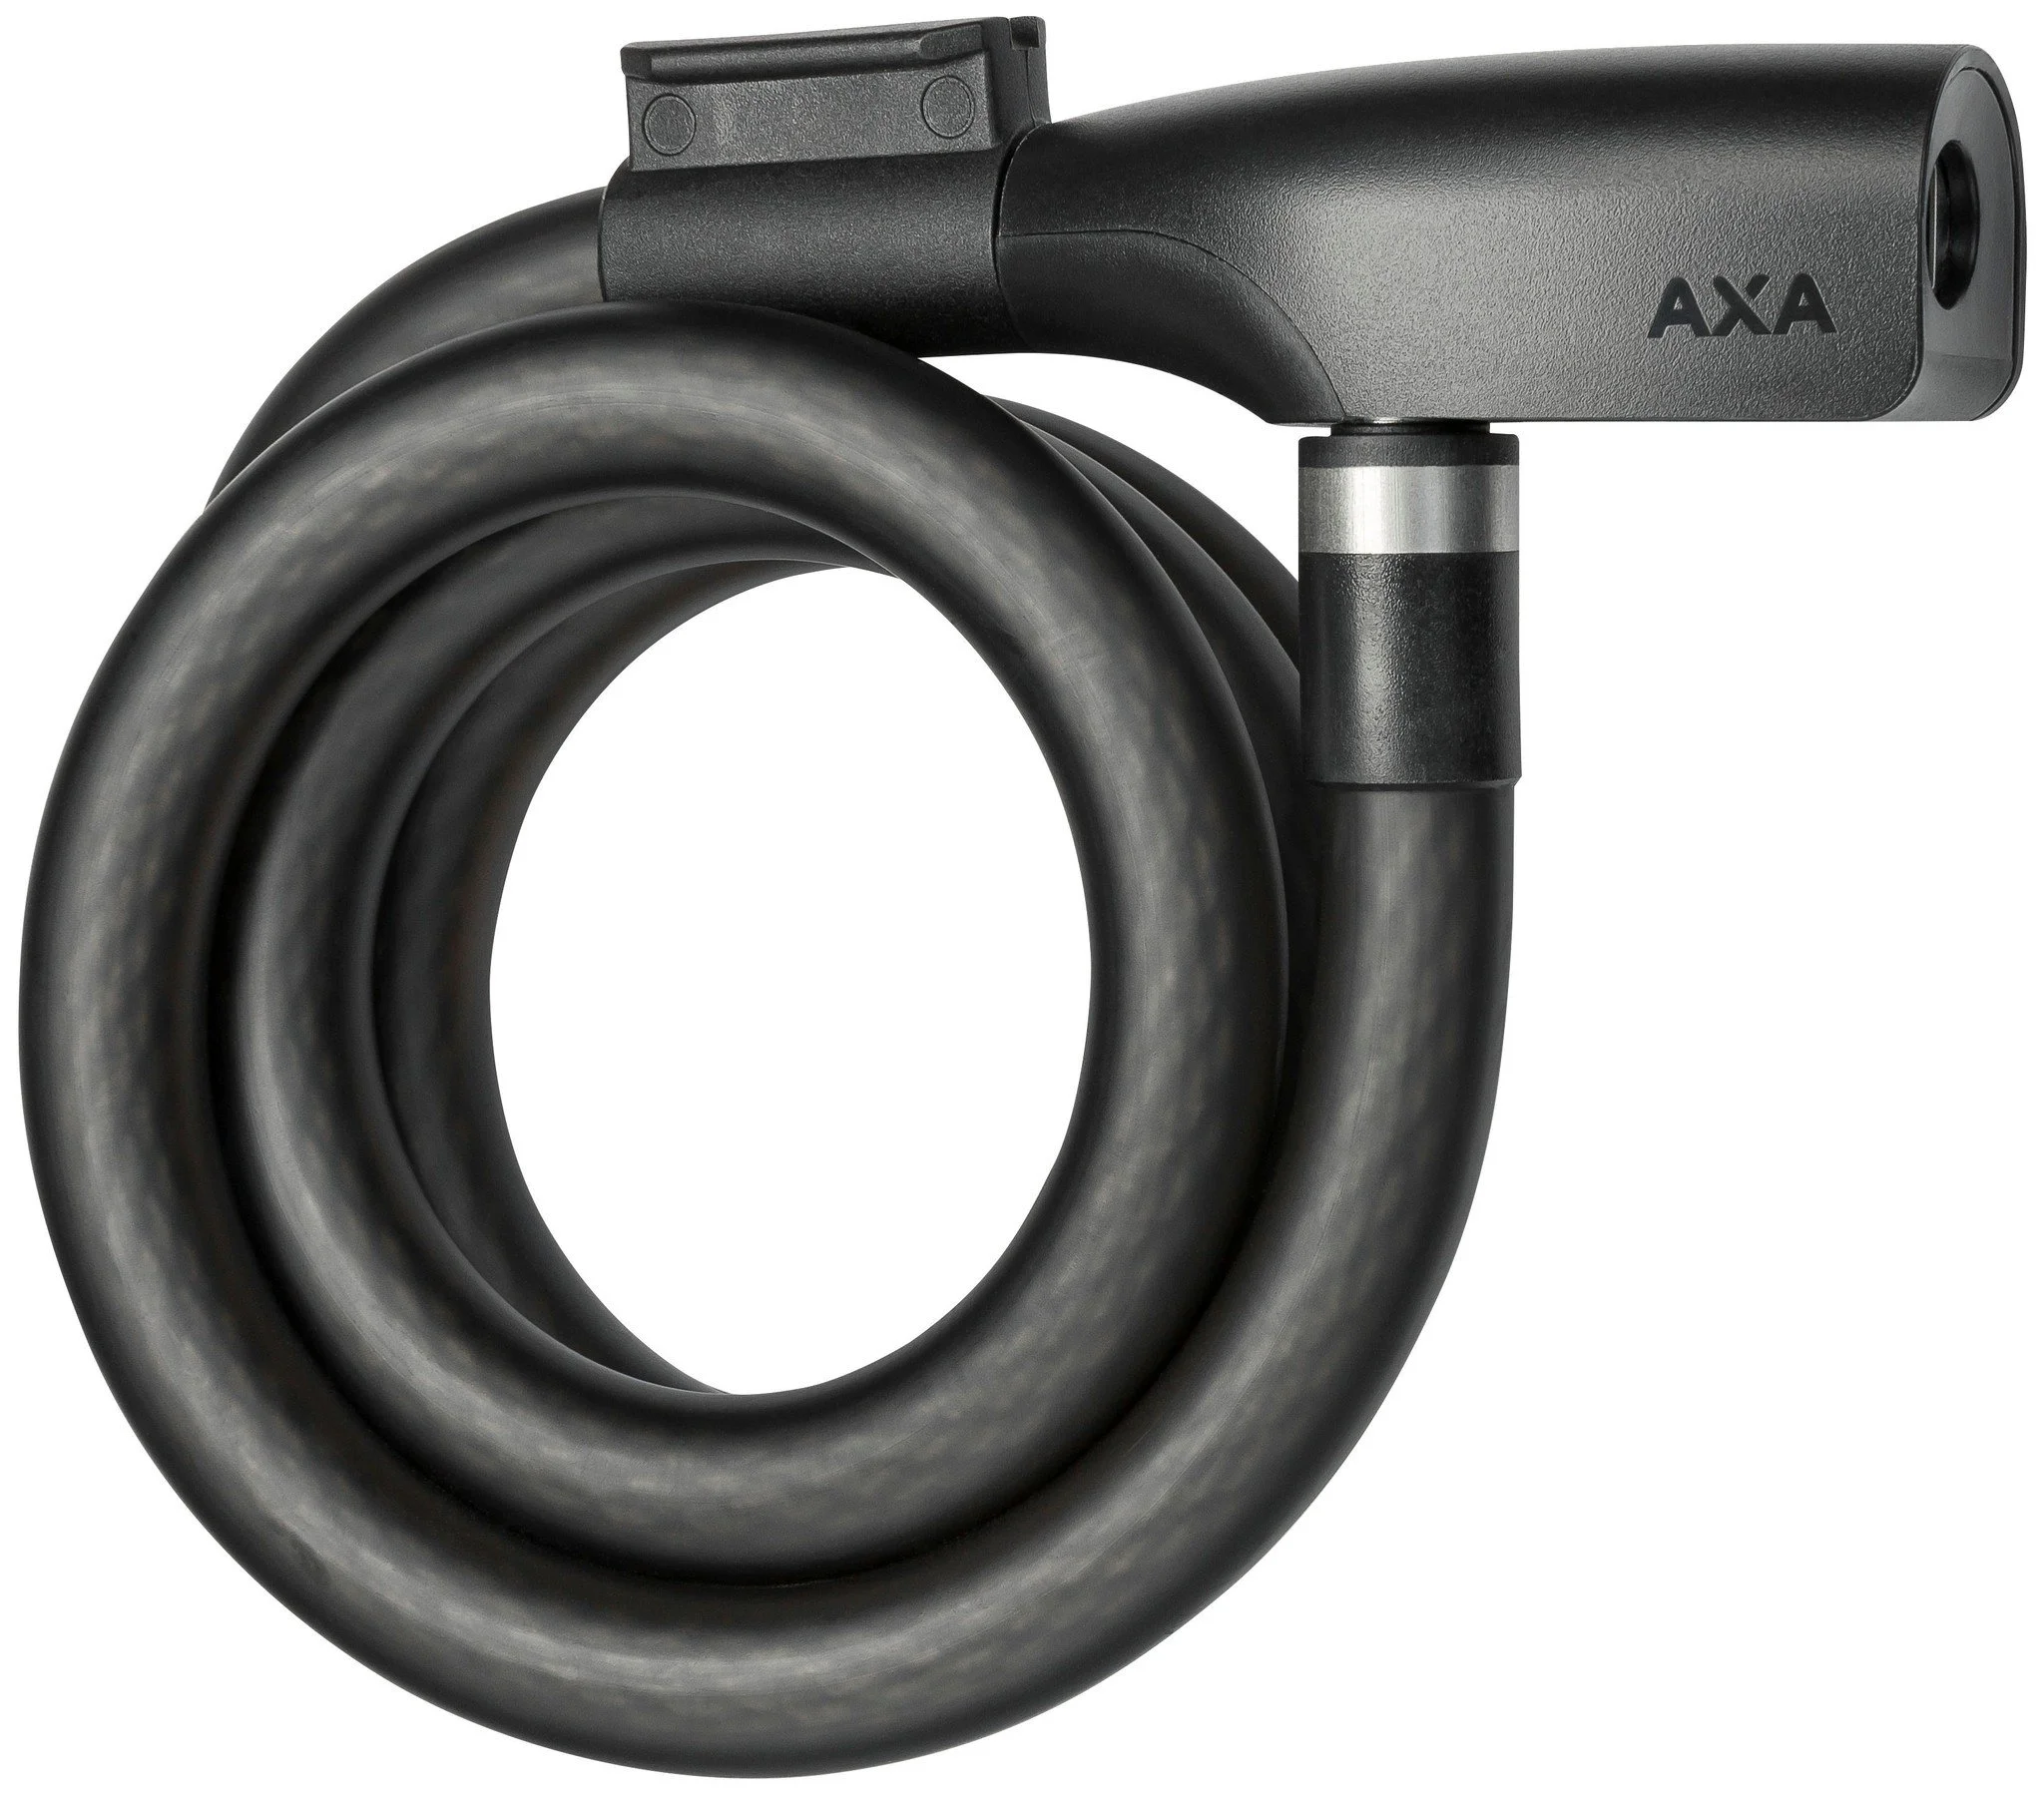 AXA kabelslot Resolute 15 120 Ø15-1200 mm zwart